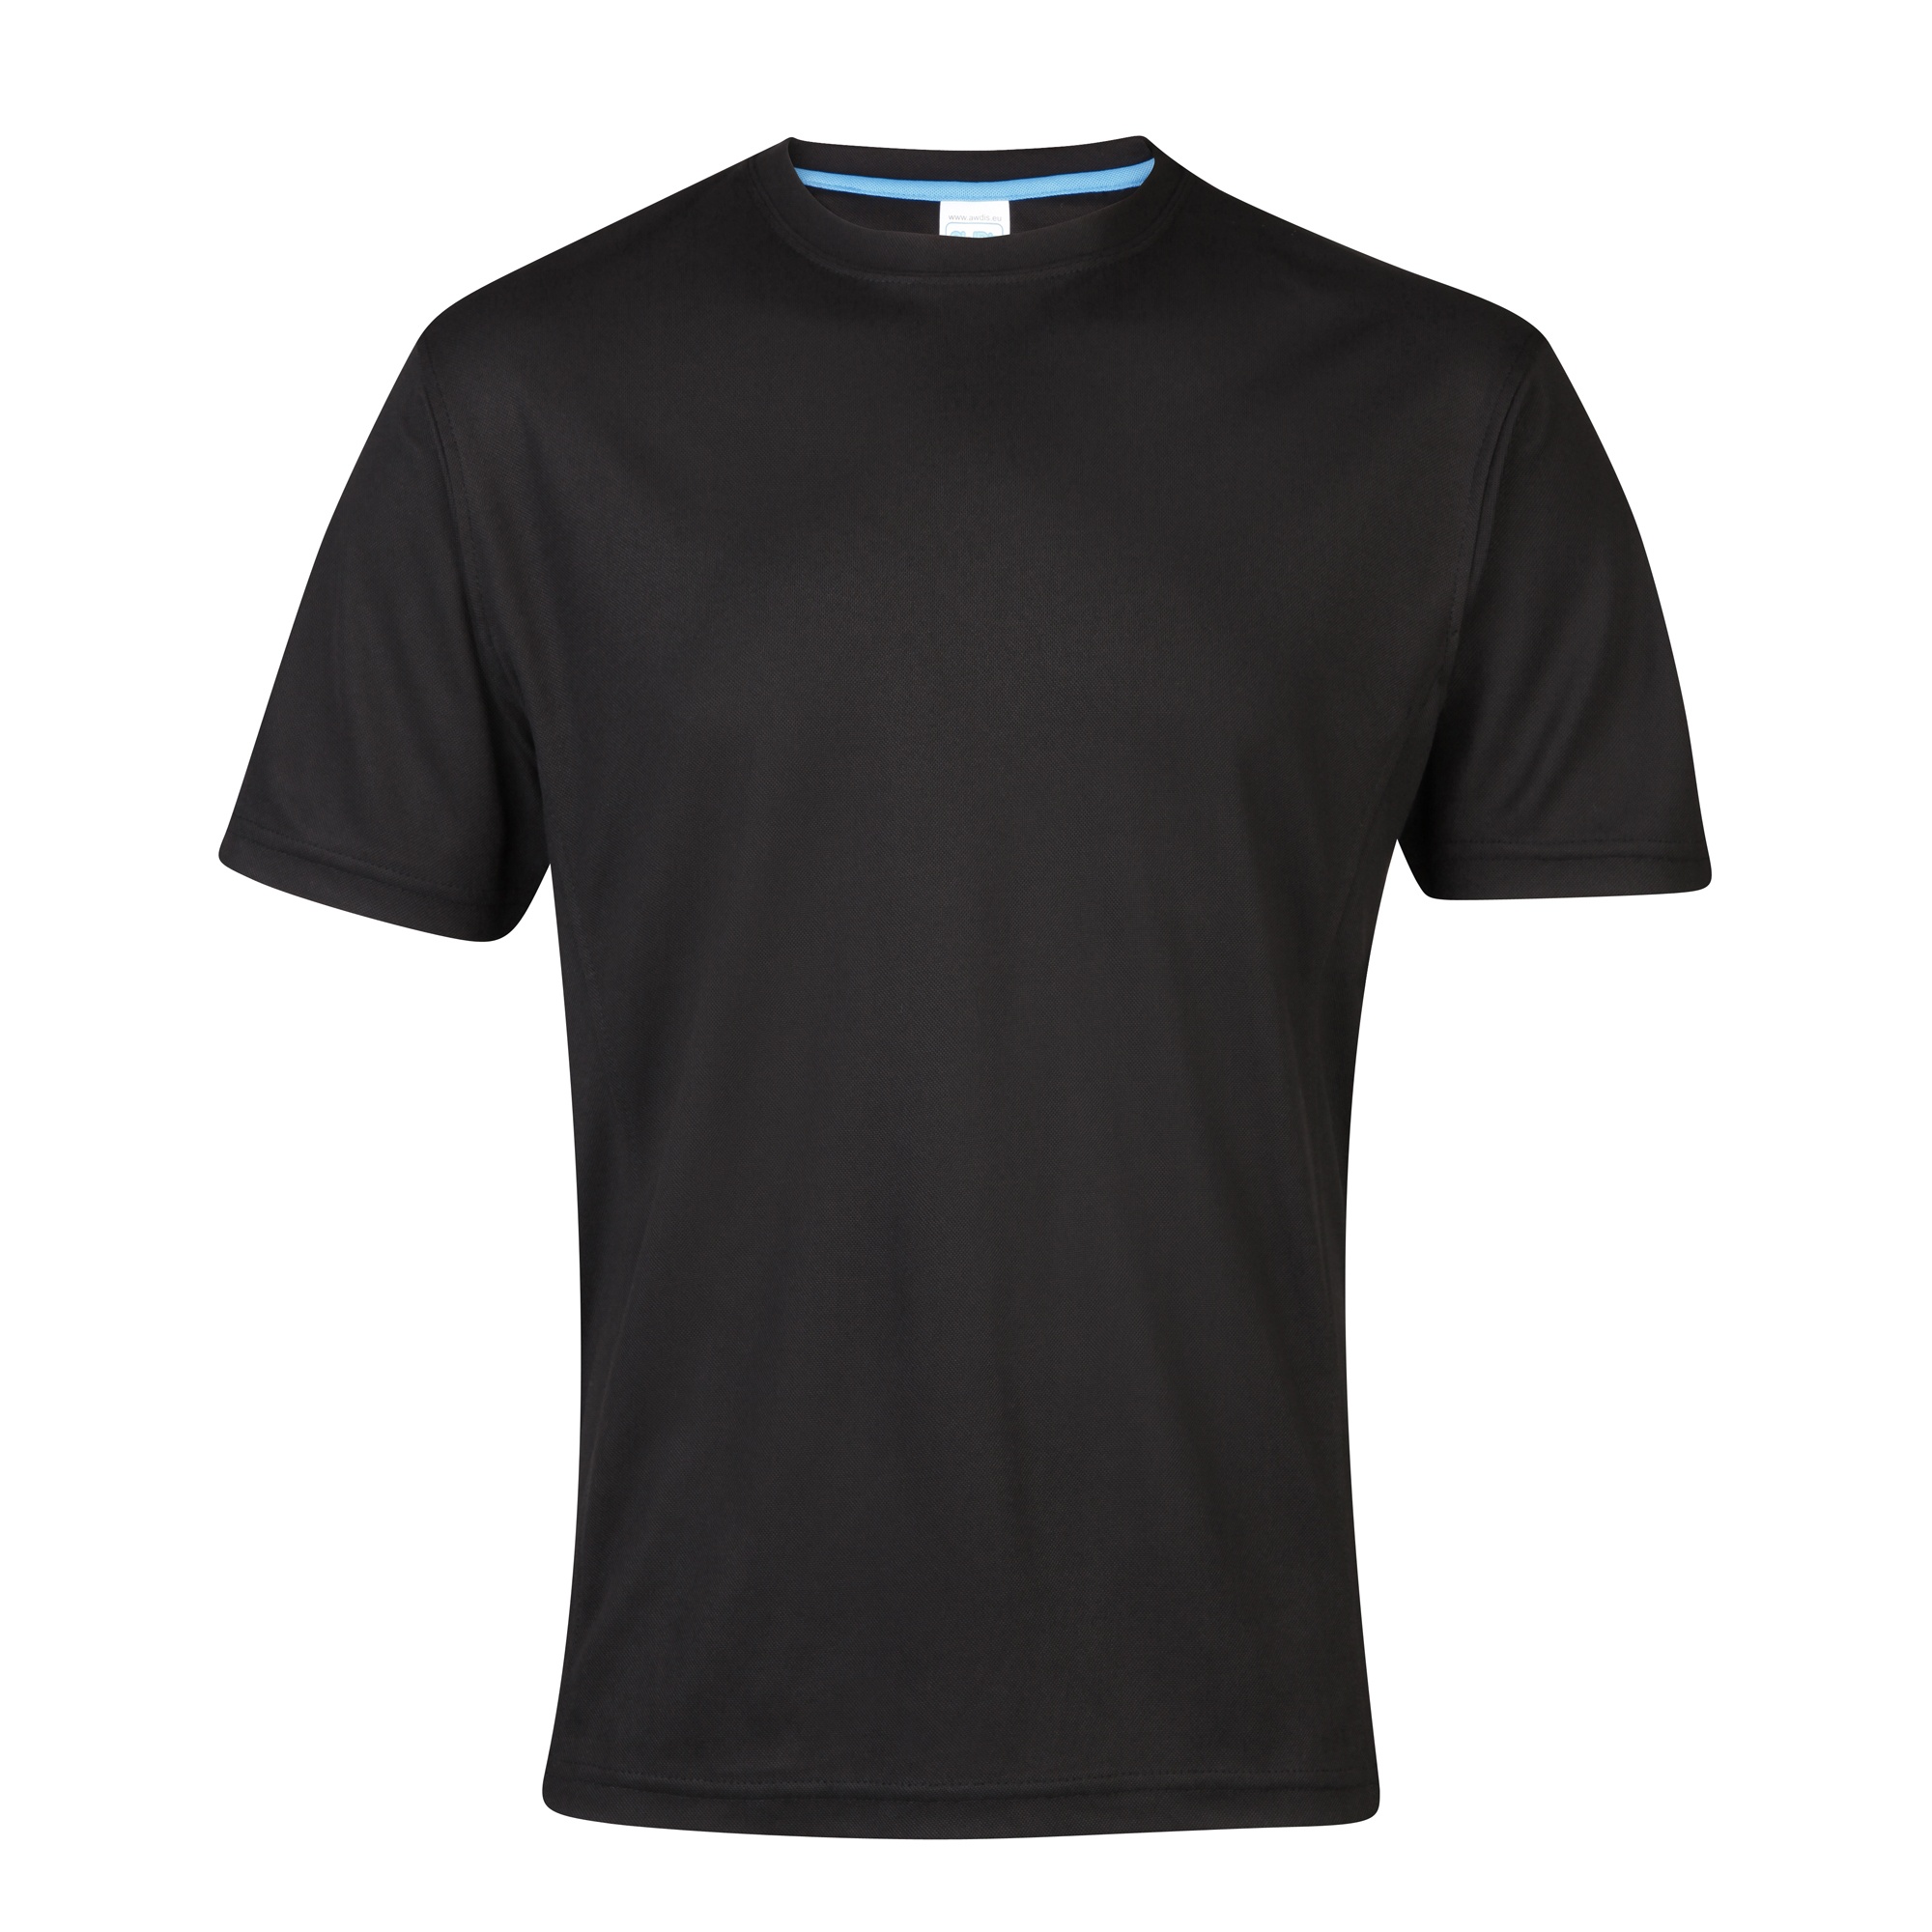 Camiseta De Deporte/ejercicio/entrenamiento Transpirable Supercool Awdis - negro - 